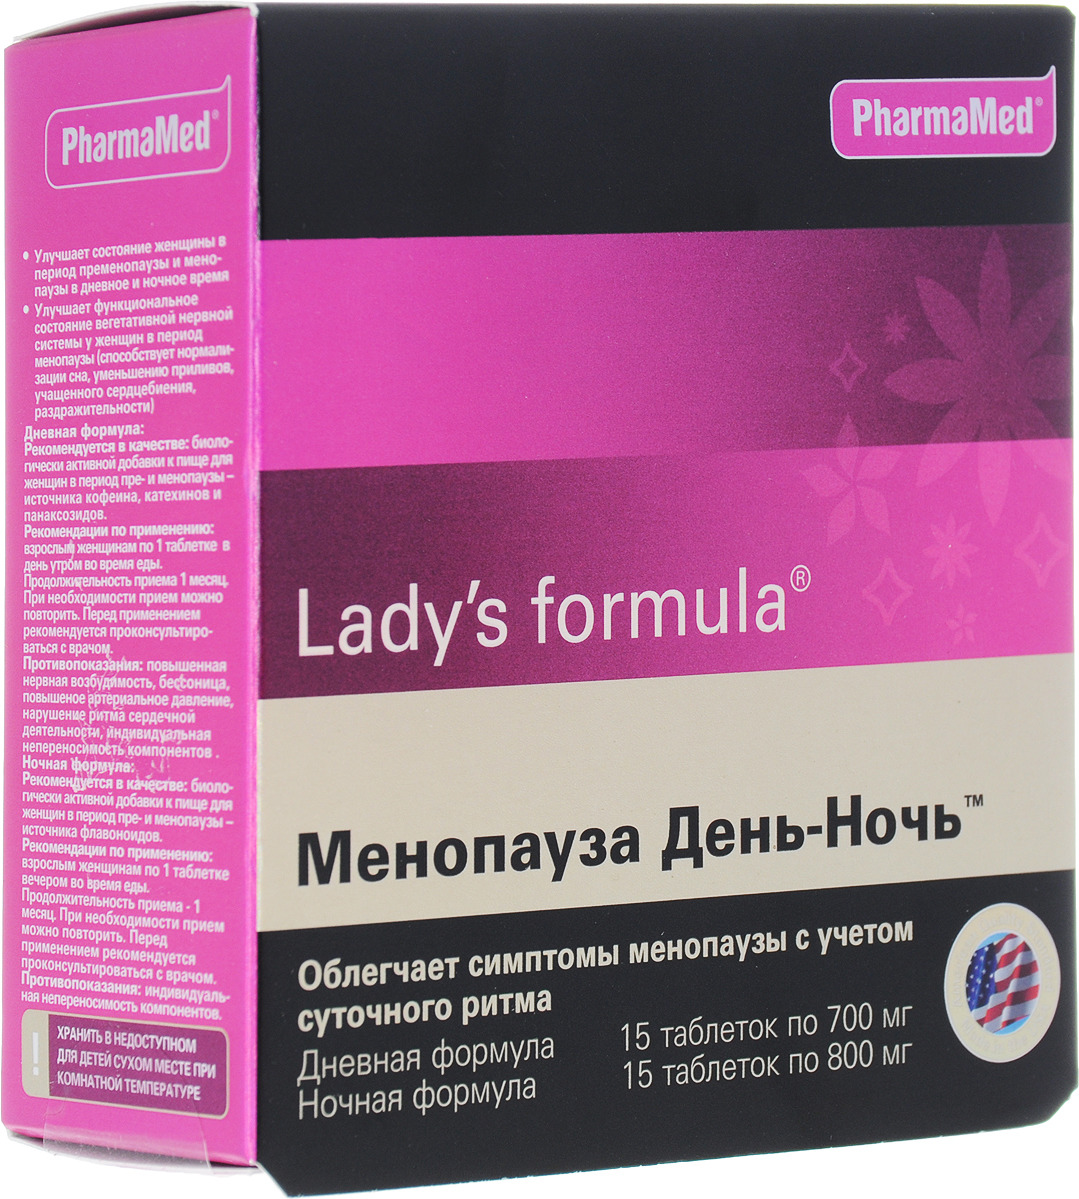 Менопауза инструкция по применению цена отзывы. Витамины ледис формула менопауза усиленная. Американские витамины для женщин ледис формула. Менопауза ледис формула таблетки. Витамины ледис формула при менопаузе.